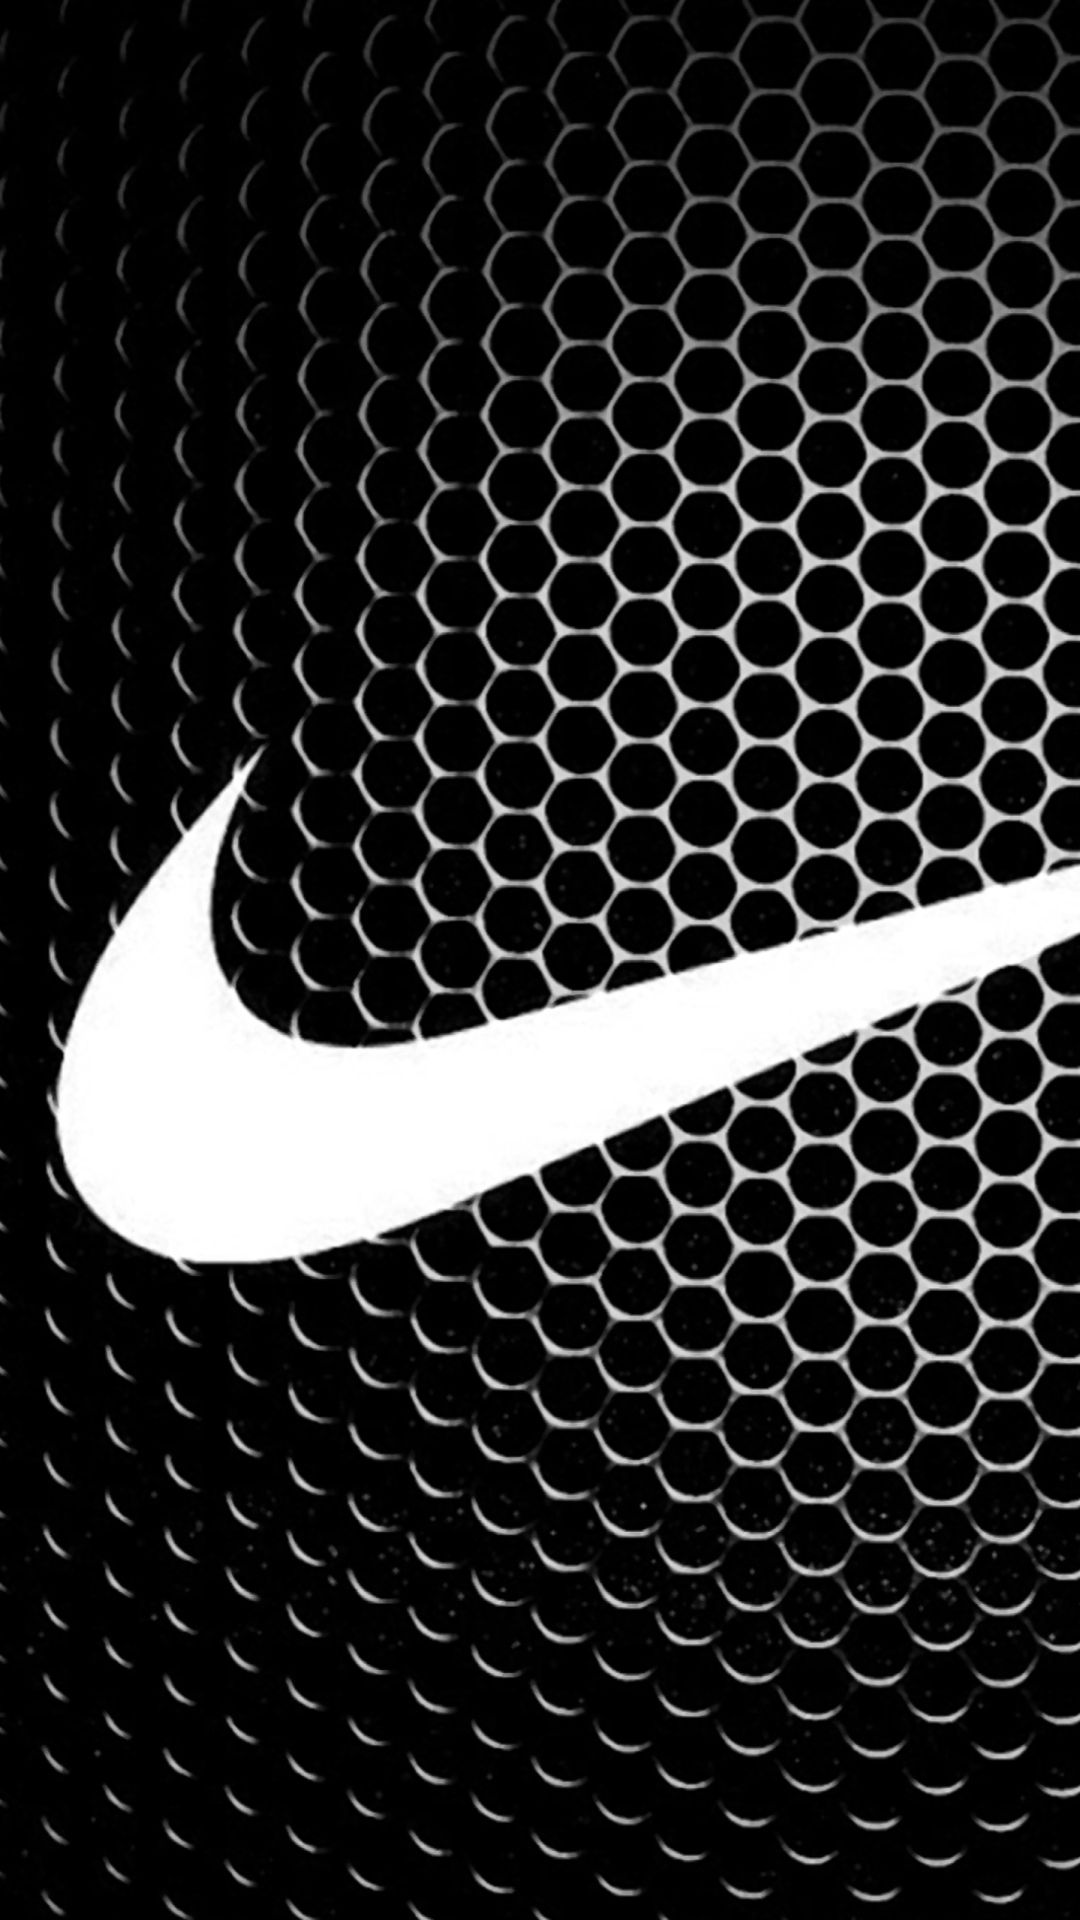 Black Nike Phone Wallpaper